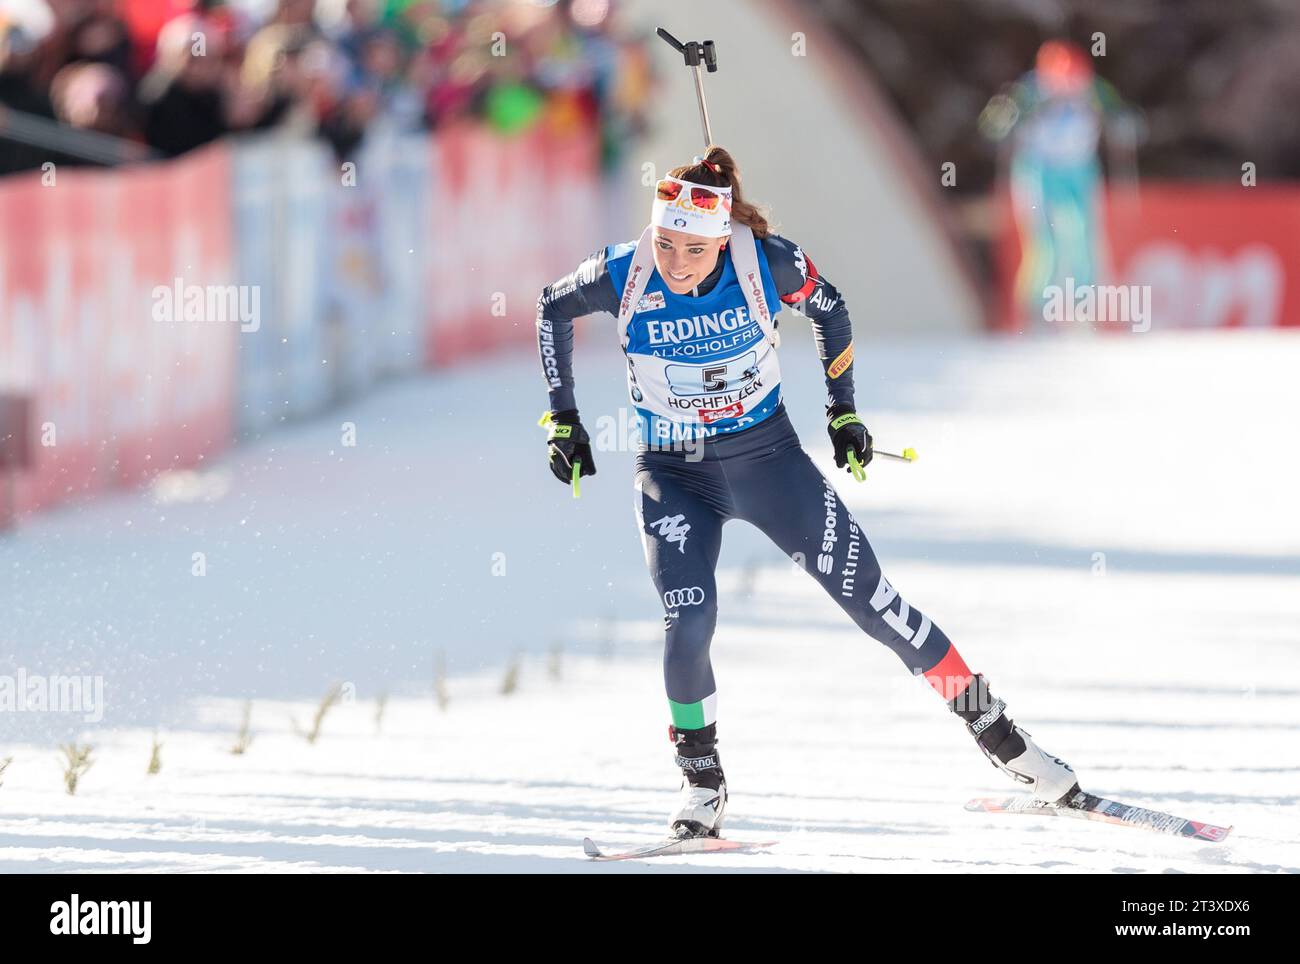 Dorothea Wierer (ITA) Biathlon Welt Cup 10 KM Verfolgung der Frauen à Hochfilzen, Oesterreich am 12.12.2015 Banque D'Images